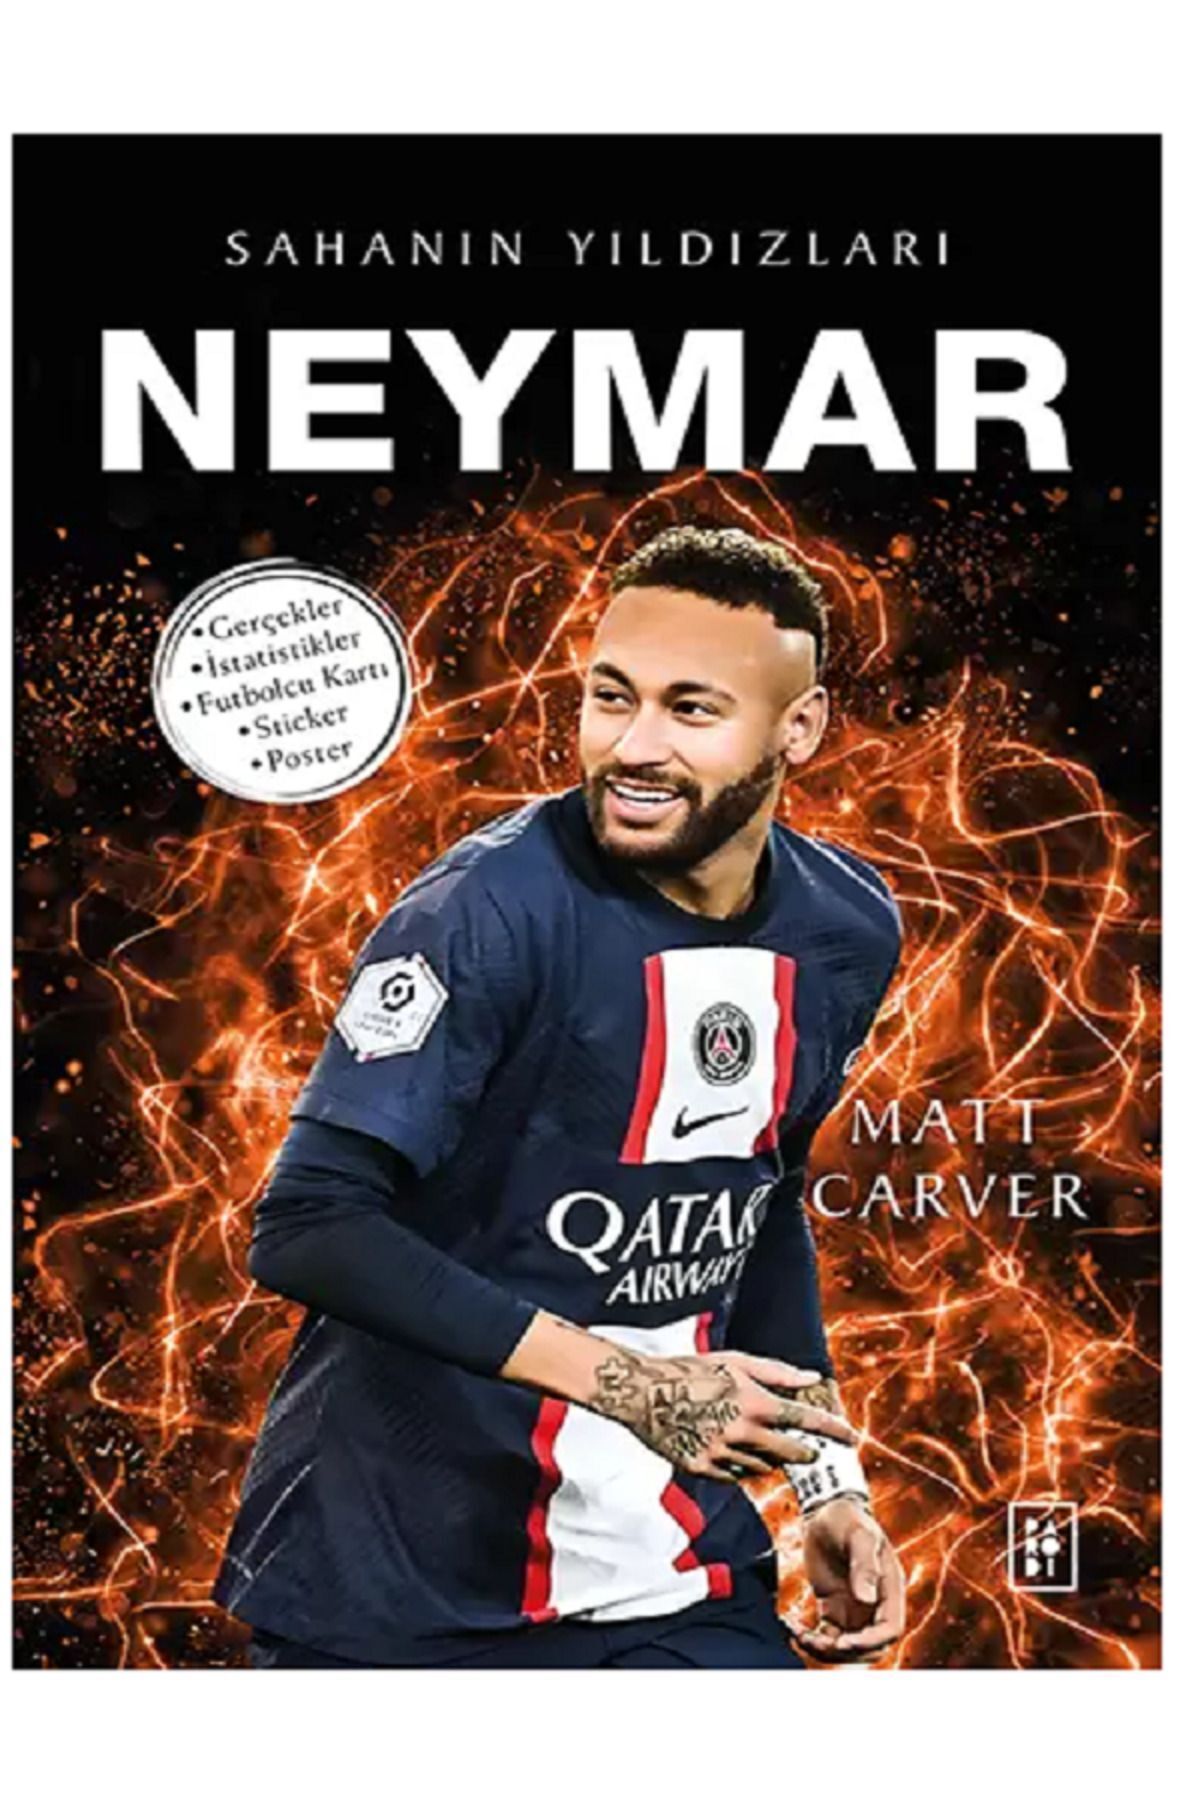 Parodi Yayınları NEYMAR - Sahanın Yıldızları ( BÜYÜK Poster - Sticker - Futbolcu Kartı HEDİYE )